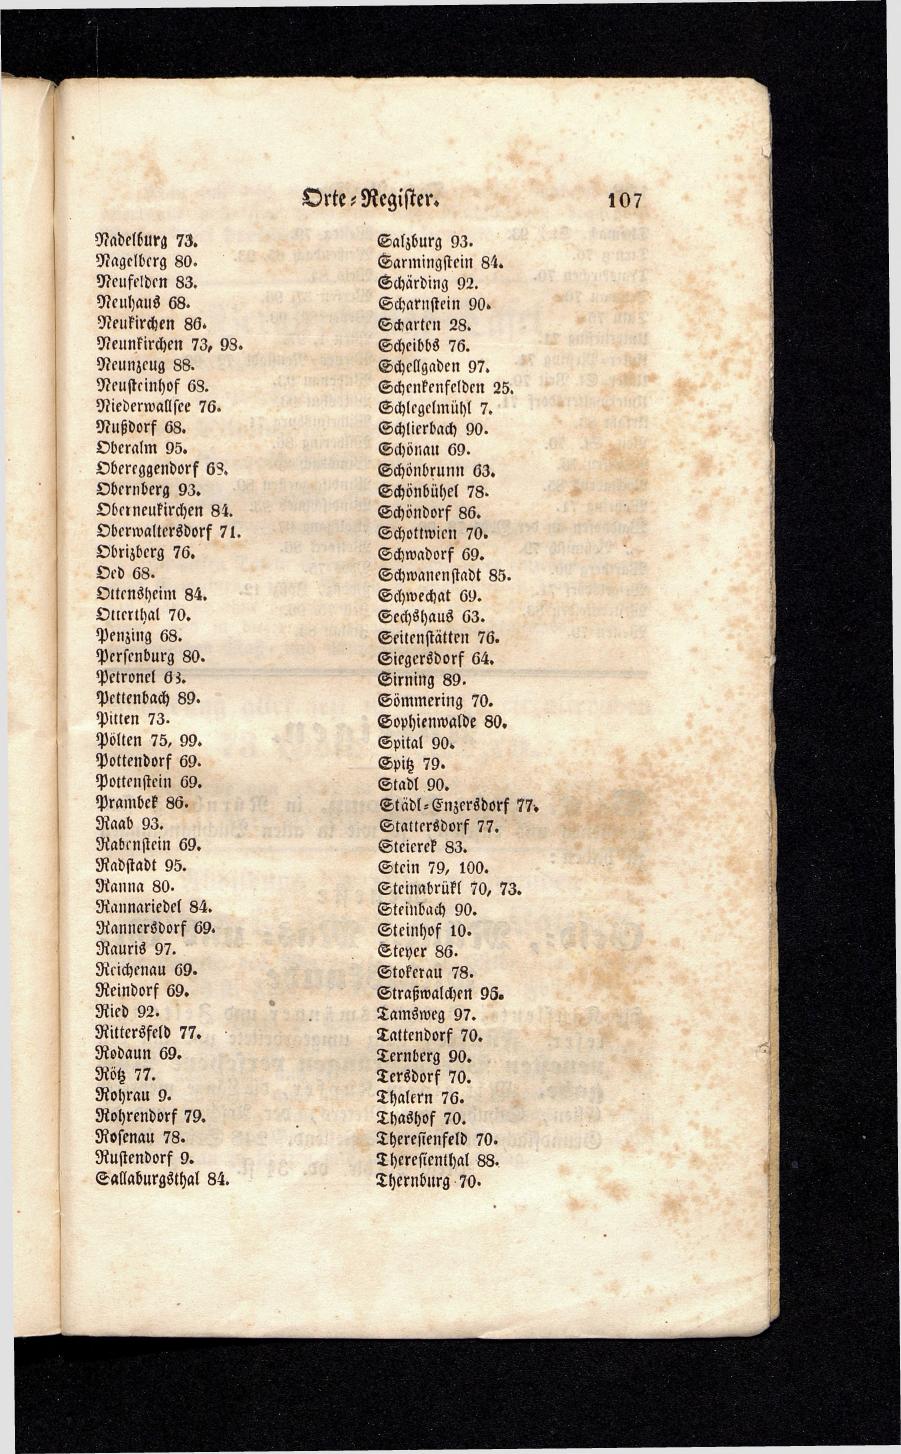 Grosses Adressbuch der Kaufleute. No. 13. Oesterreich ober u. unter der Enns 1844 - Seite 111